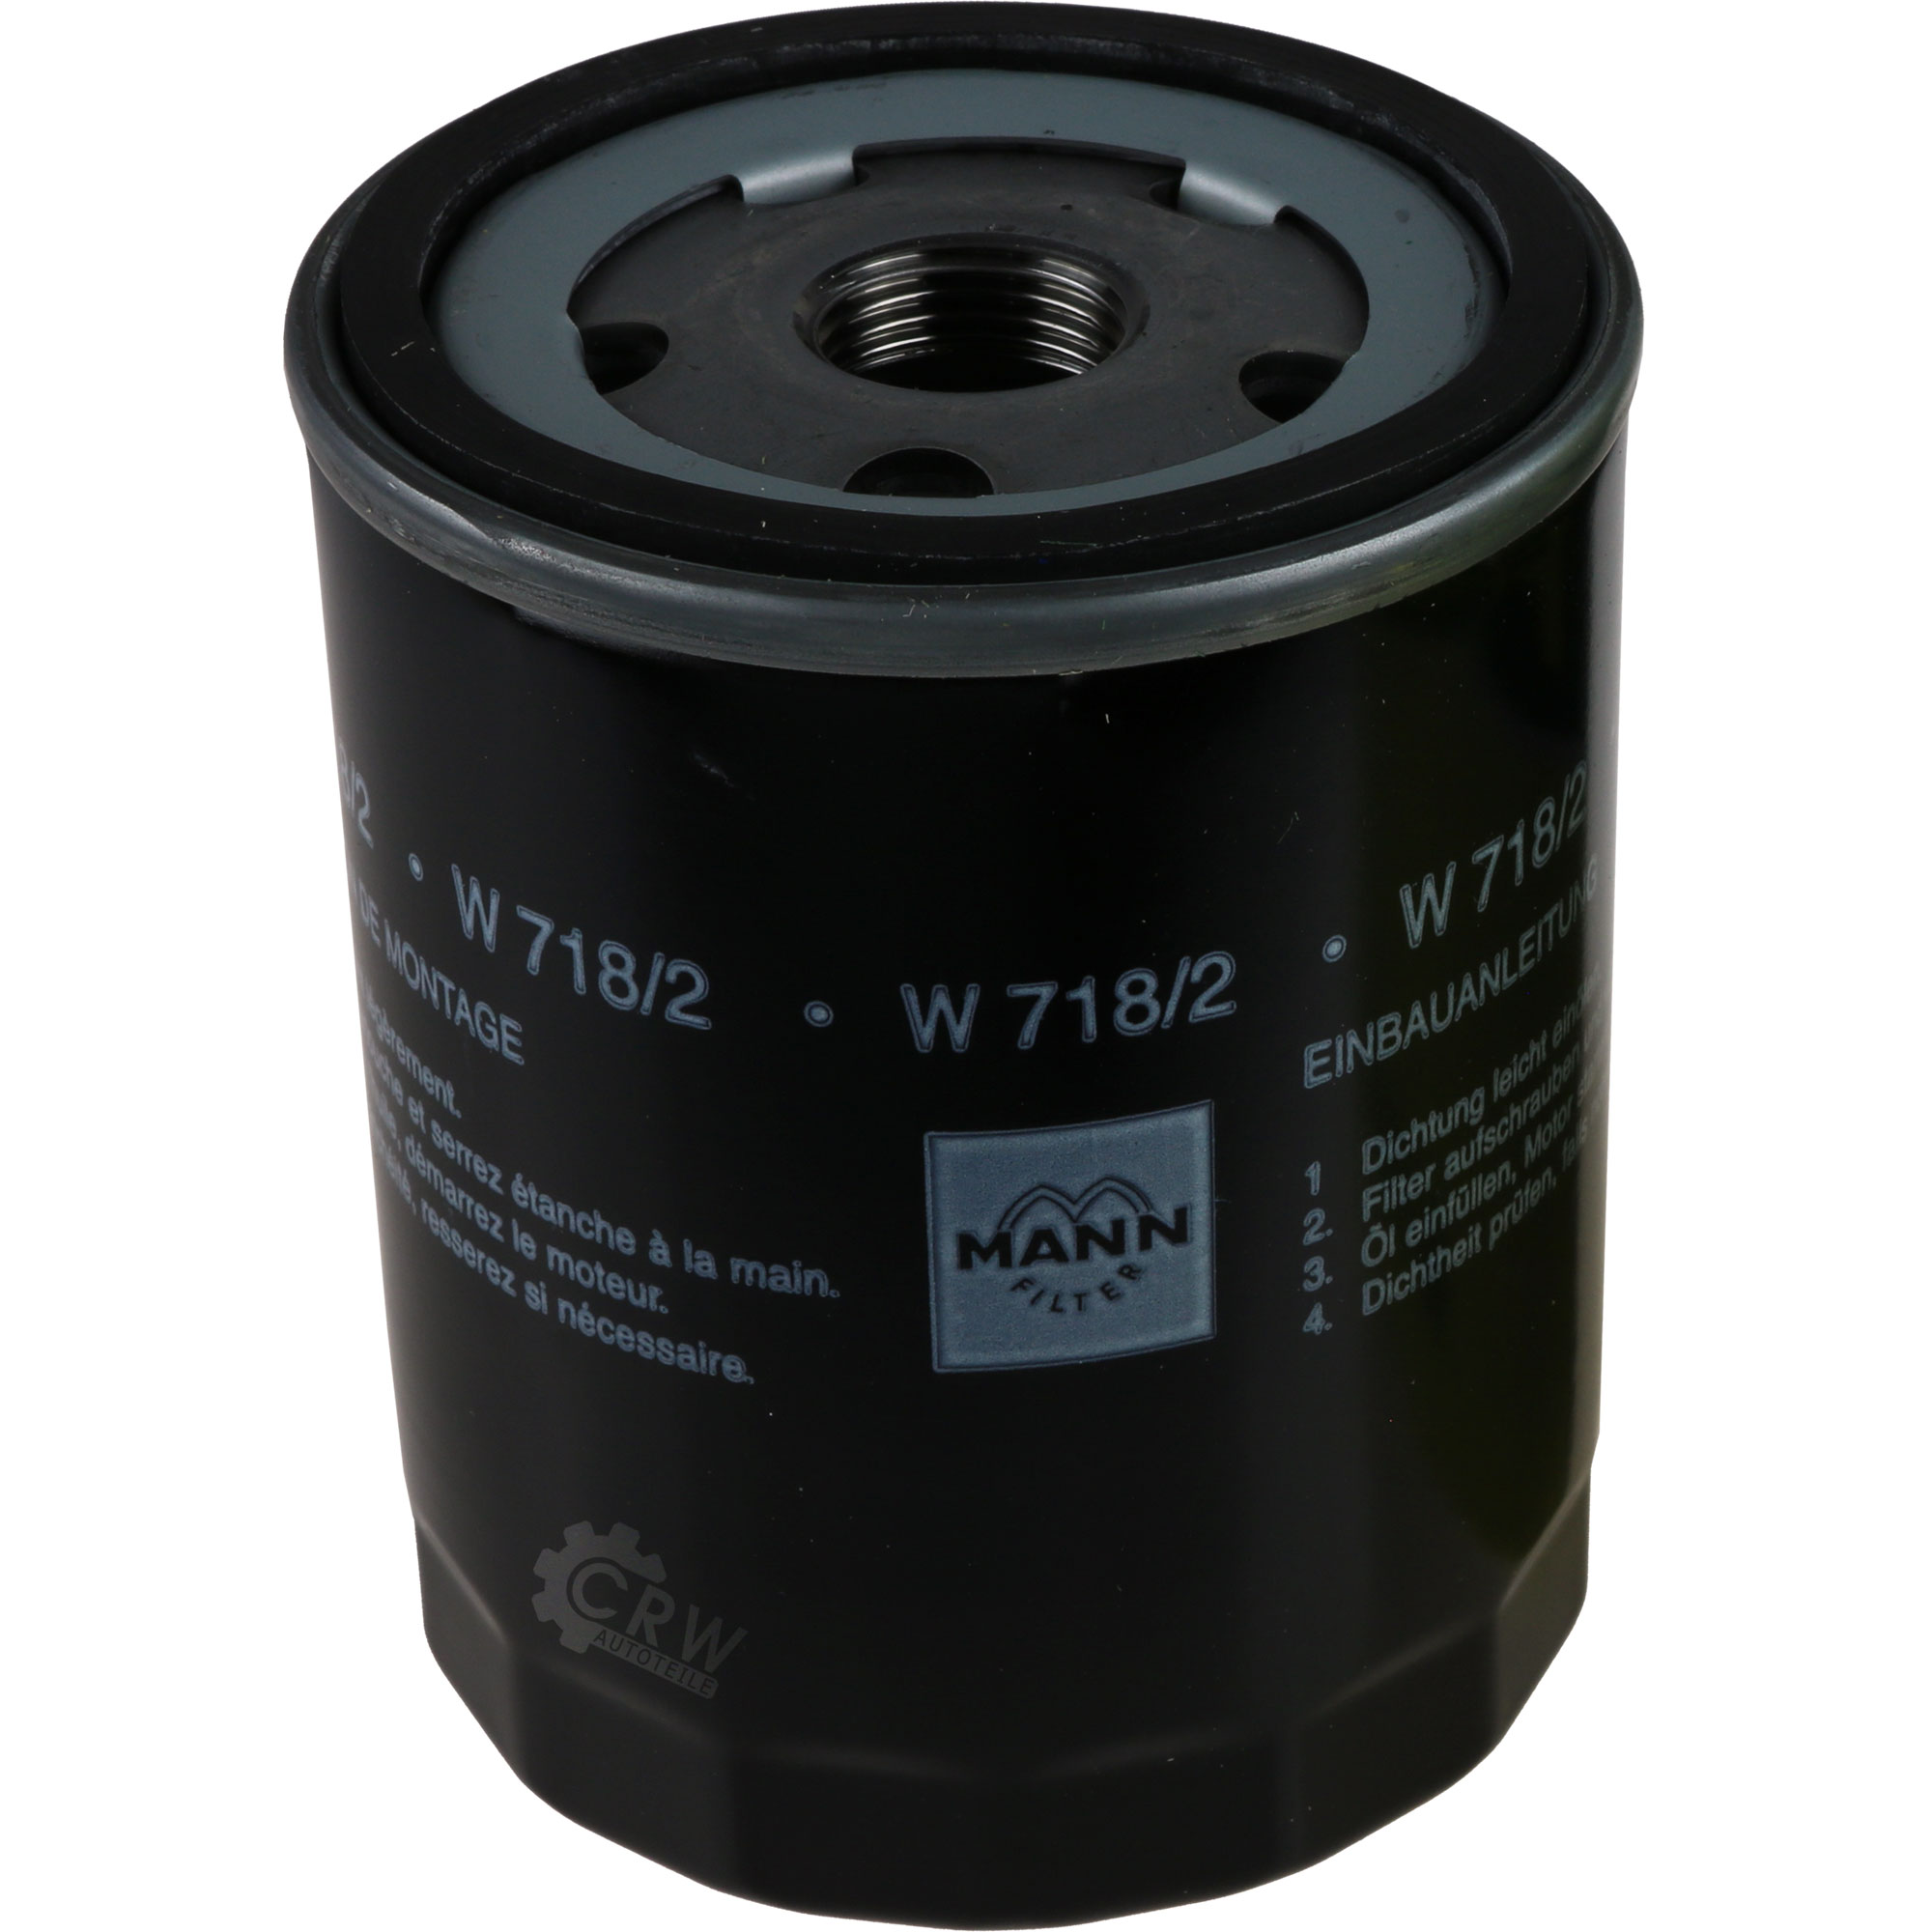 MANN-FILTER Ölfilter W 718/2 Oil Filter